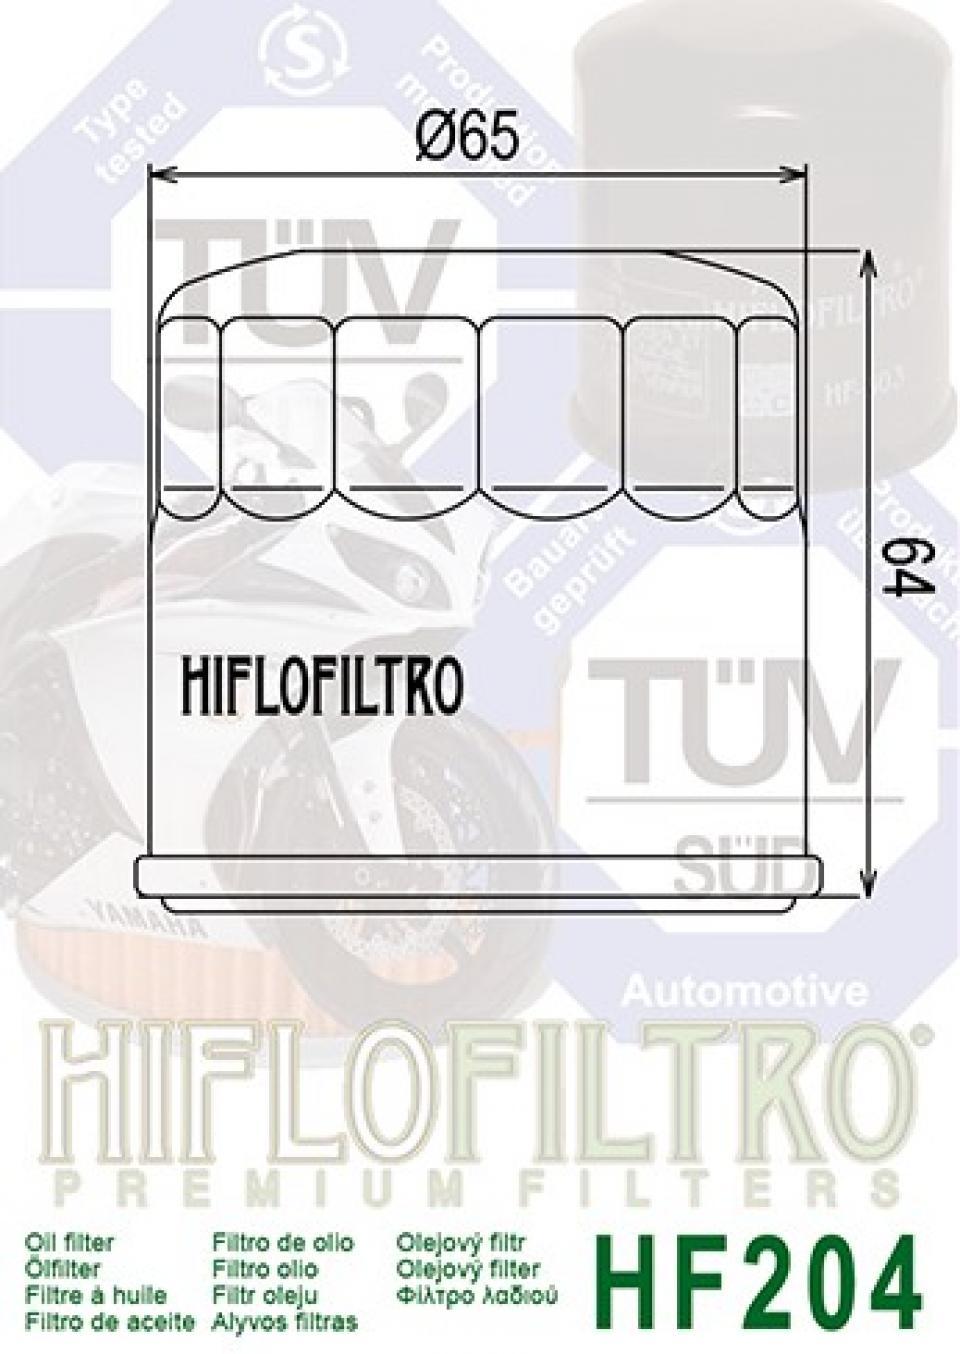 Filtre à huile Hiflofiltro pour Moto Yamaha 1000 FZ1 S 2006 à 2013 Neuf